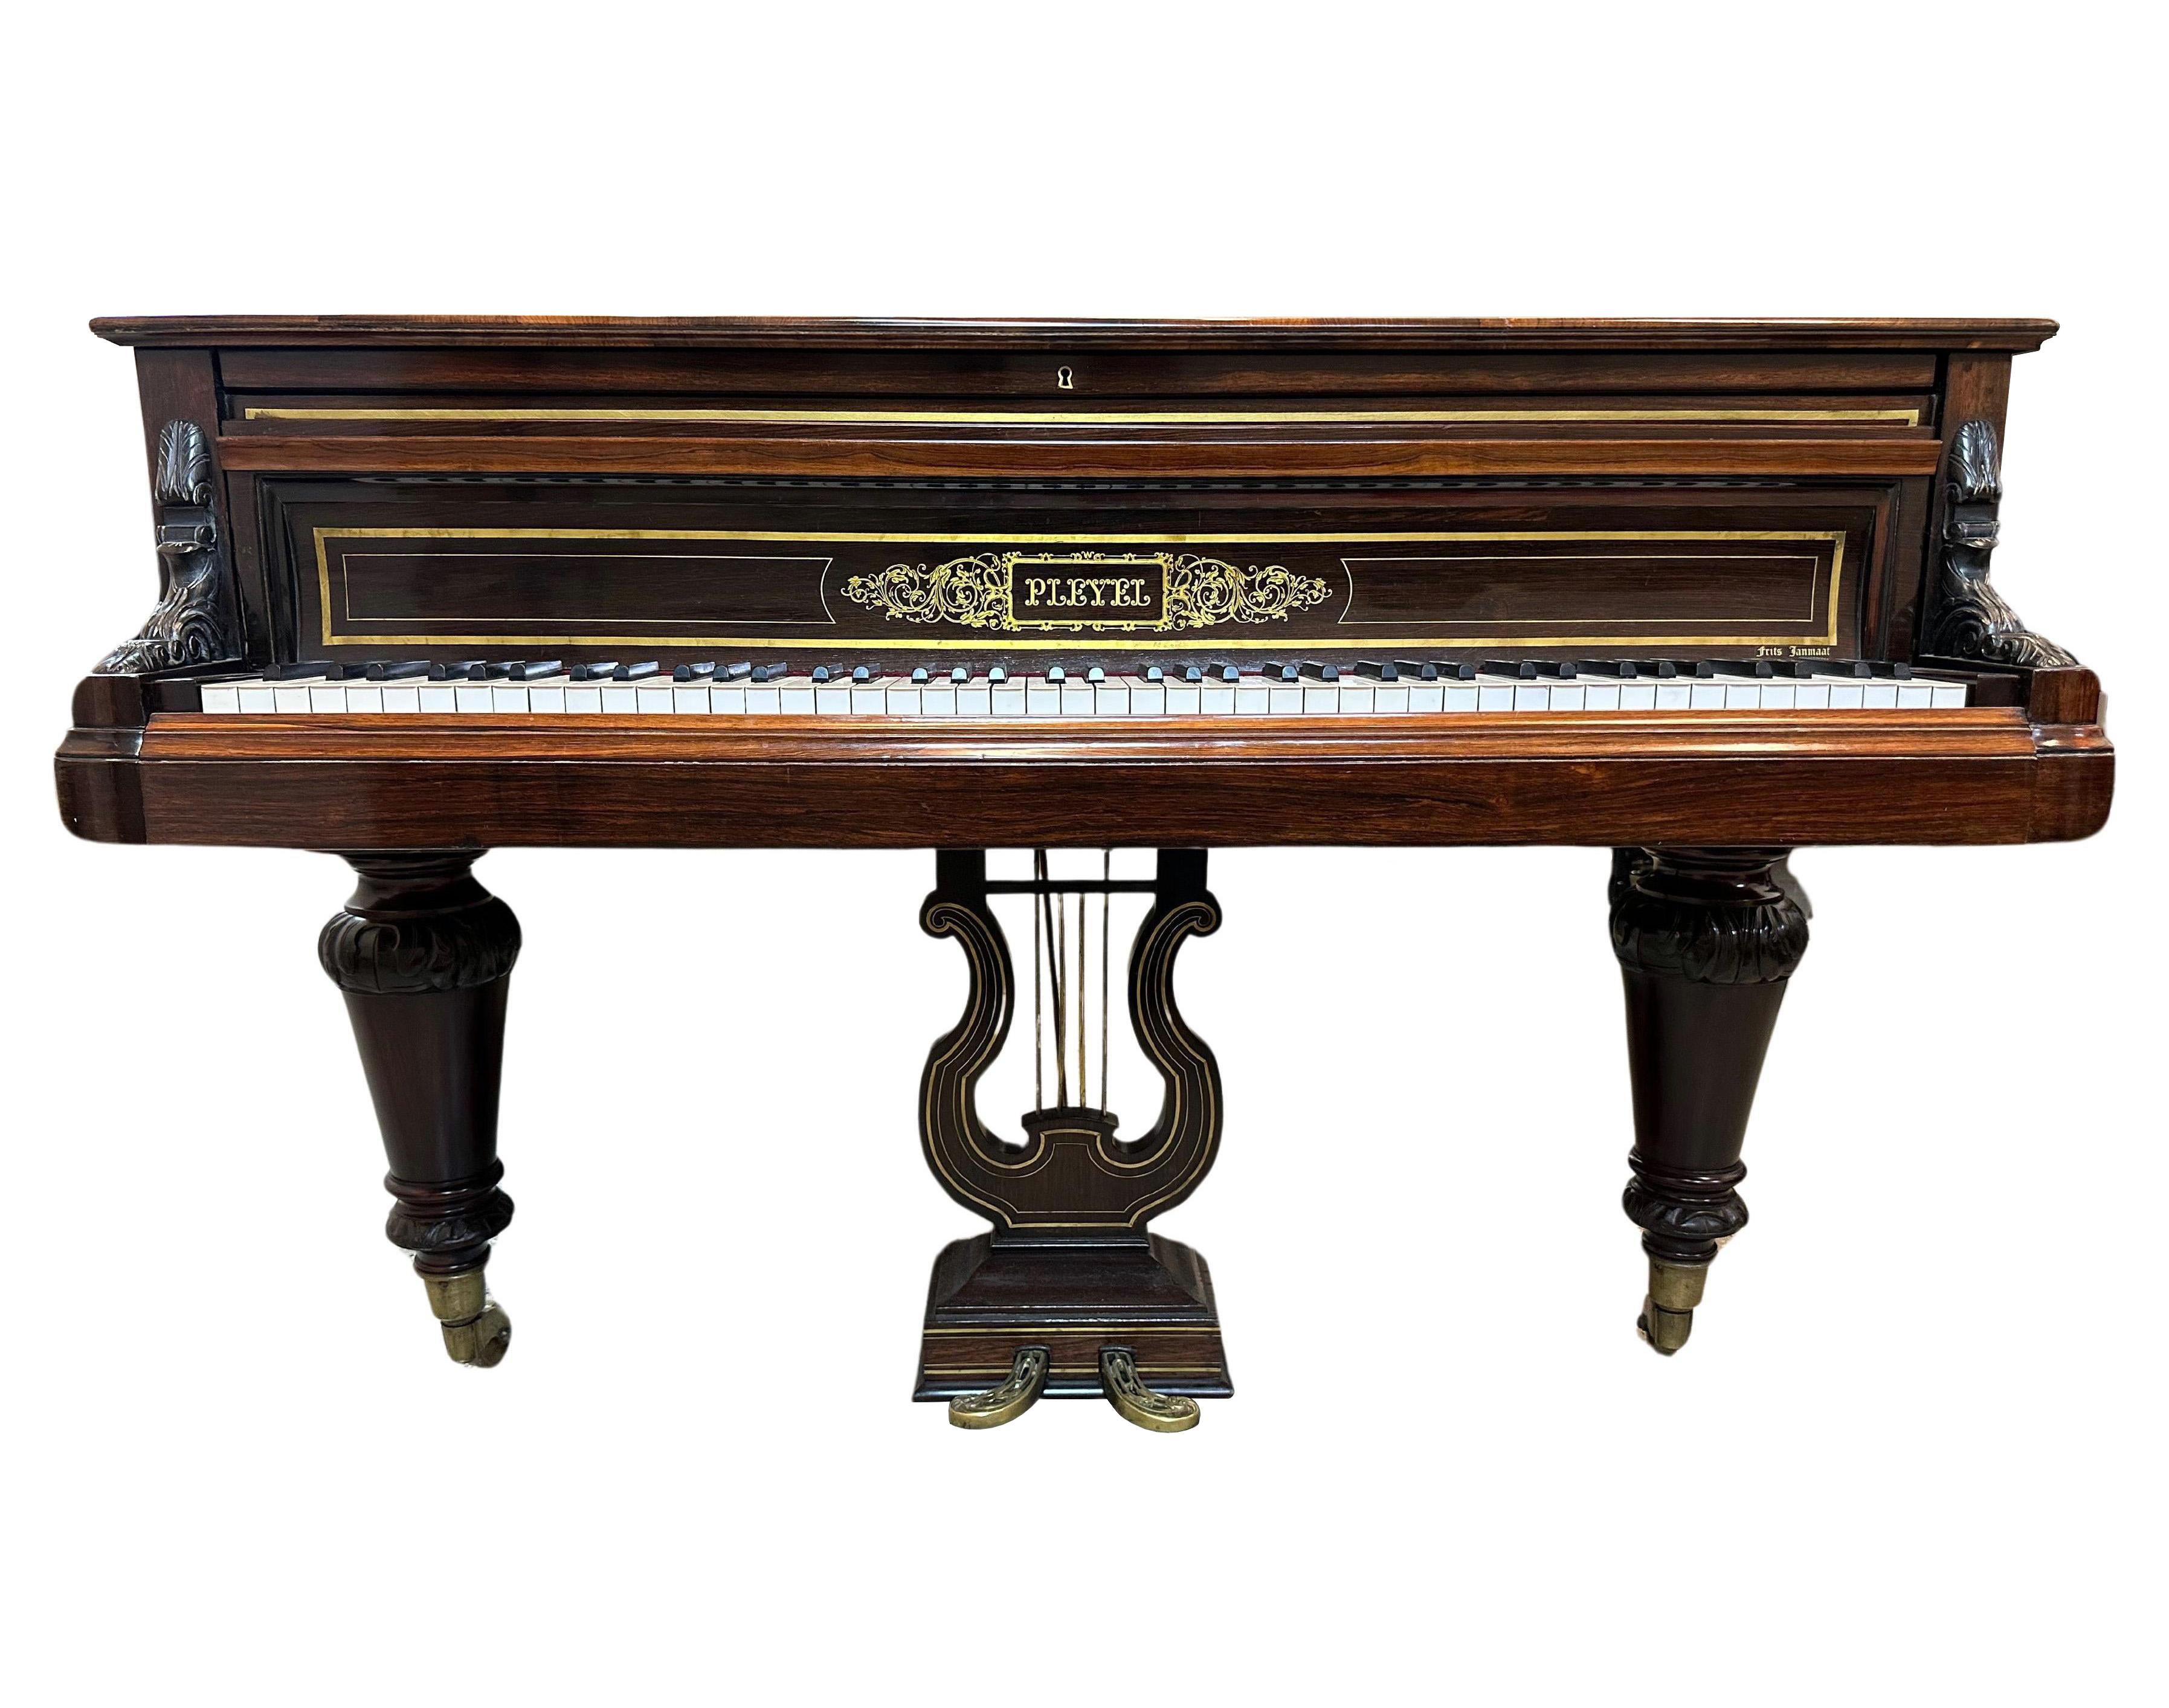 Ce piano à queue de concert Pleyel, fabriqué à Paris en 1870, est un chef-d'œuvre intemporel qui incarne l'élégance et le savoir-faire de la facture française du XIXe siècle. Les instruments Pleyel sont réputés pour leur qualité exceptionnelle et